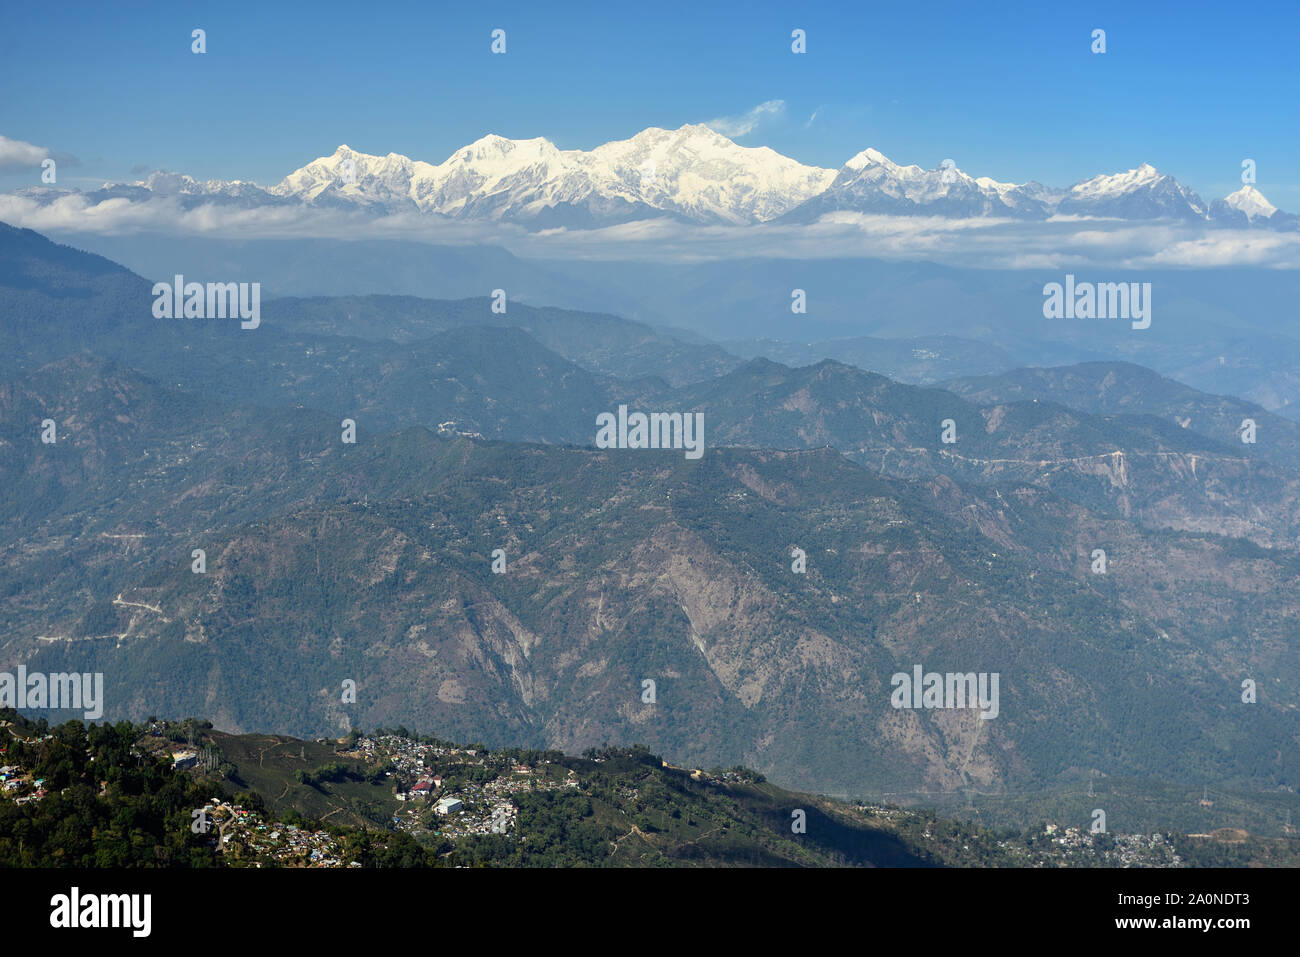 La beauté naturelle de l'Himalaya, les montagnes blanches, vue spectaculaire sur le Darjeeling, West Bengal, India Banque D'Images